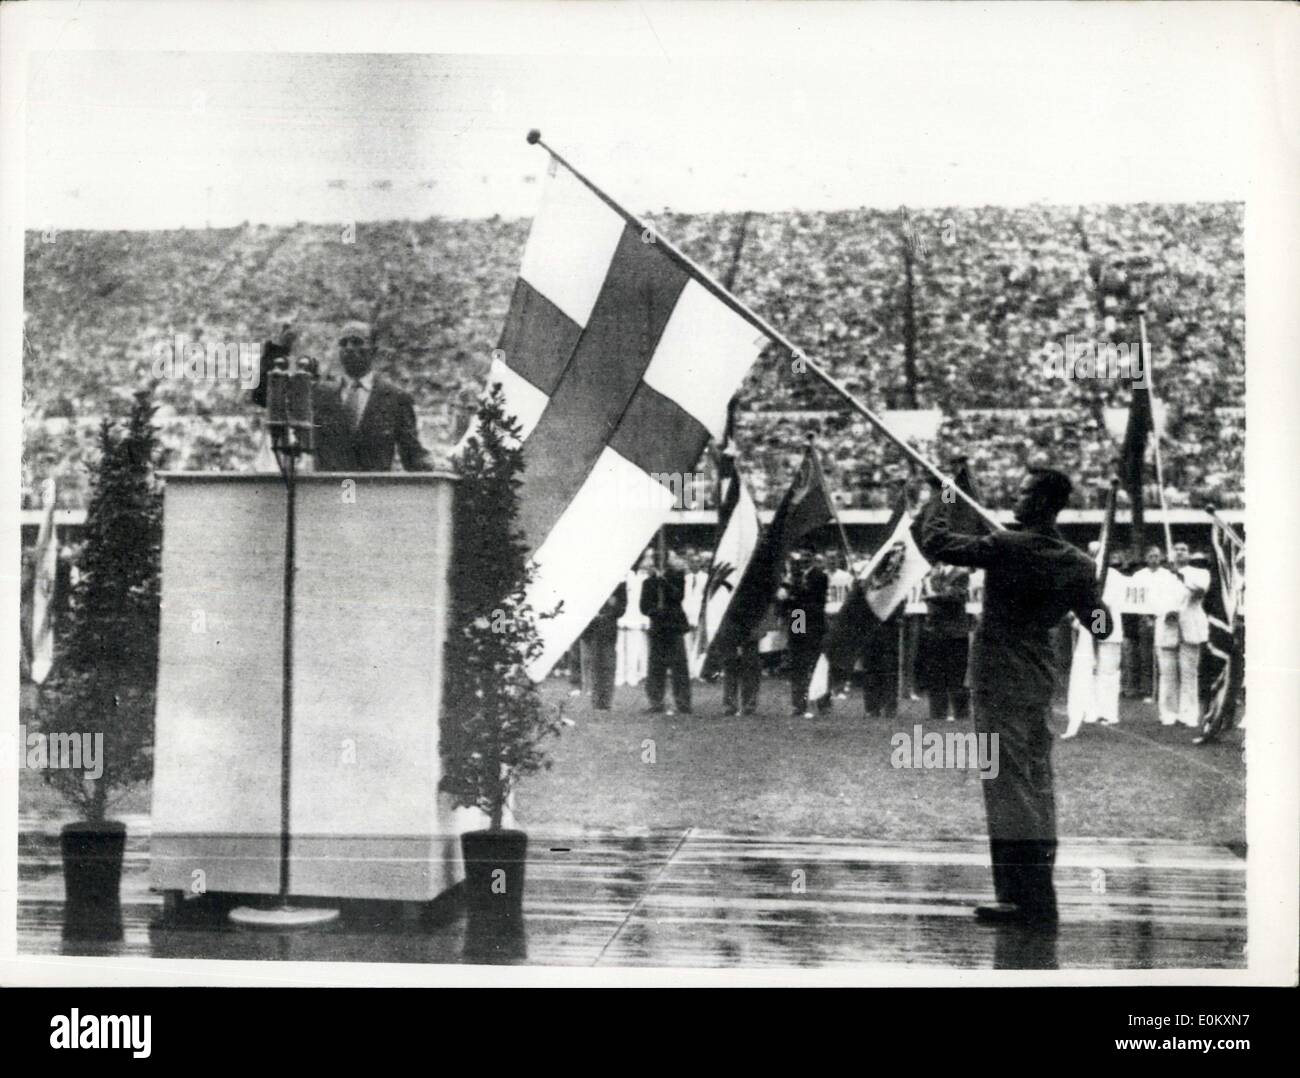 Juillet 19, 1952 - L'ouverture de Jeux olympiques de 1952 à Helsinki. Photo montre : Heikki Savoilainen, athlète finlandais prend le serment olympique aux côtés du drapeau finlandais, au cours de la cérémonie d ouverture au Stade Olympique d'aujourd'hui. Tandis que d'autres drapeaux de nations sont abaissés au cours de la prestation de serment, le drapeau russe (extrême droite) reste en position verticale. Banque D'Images